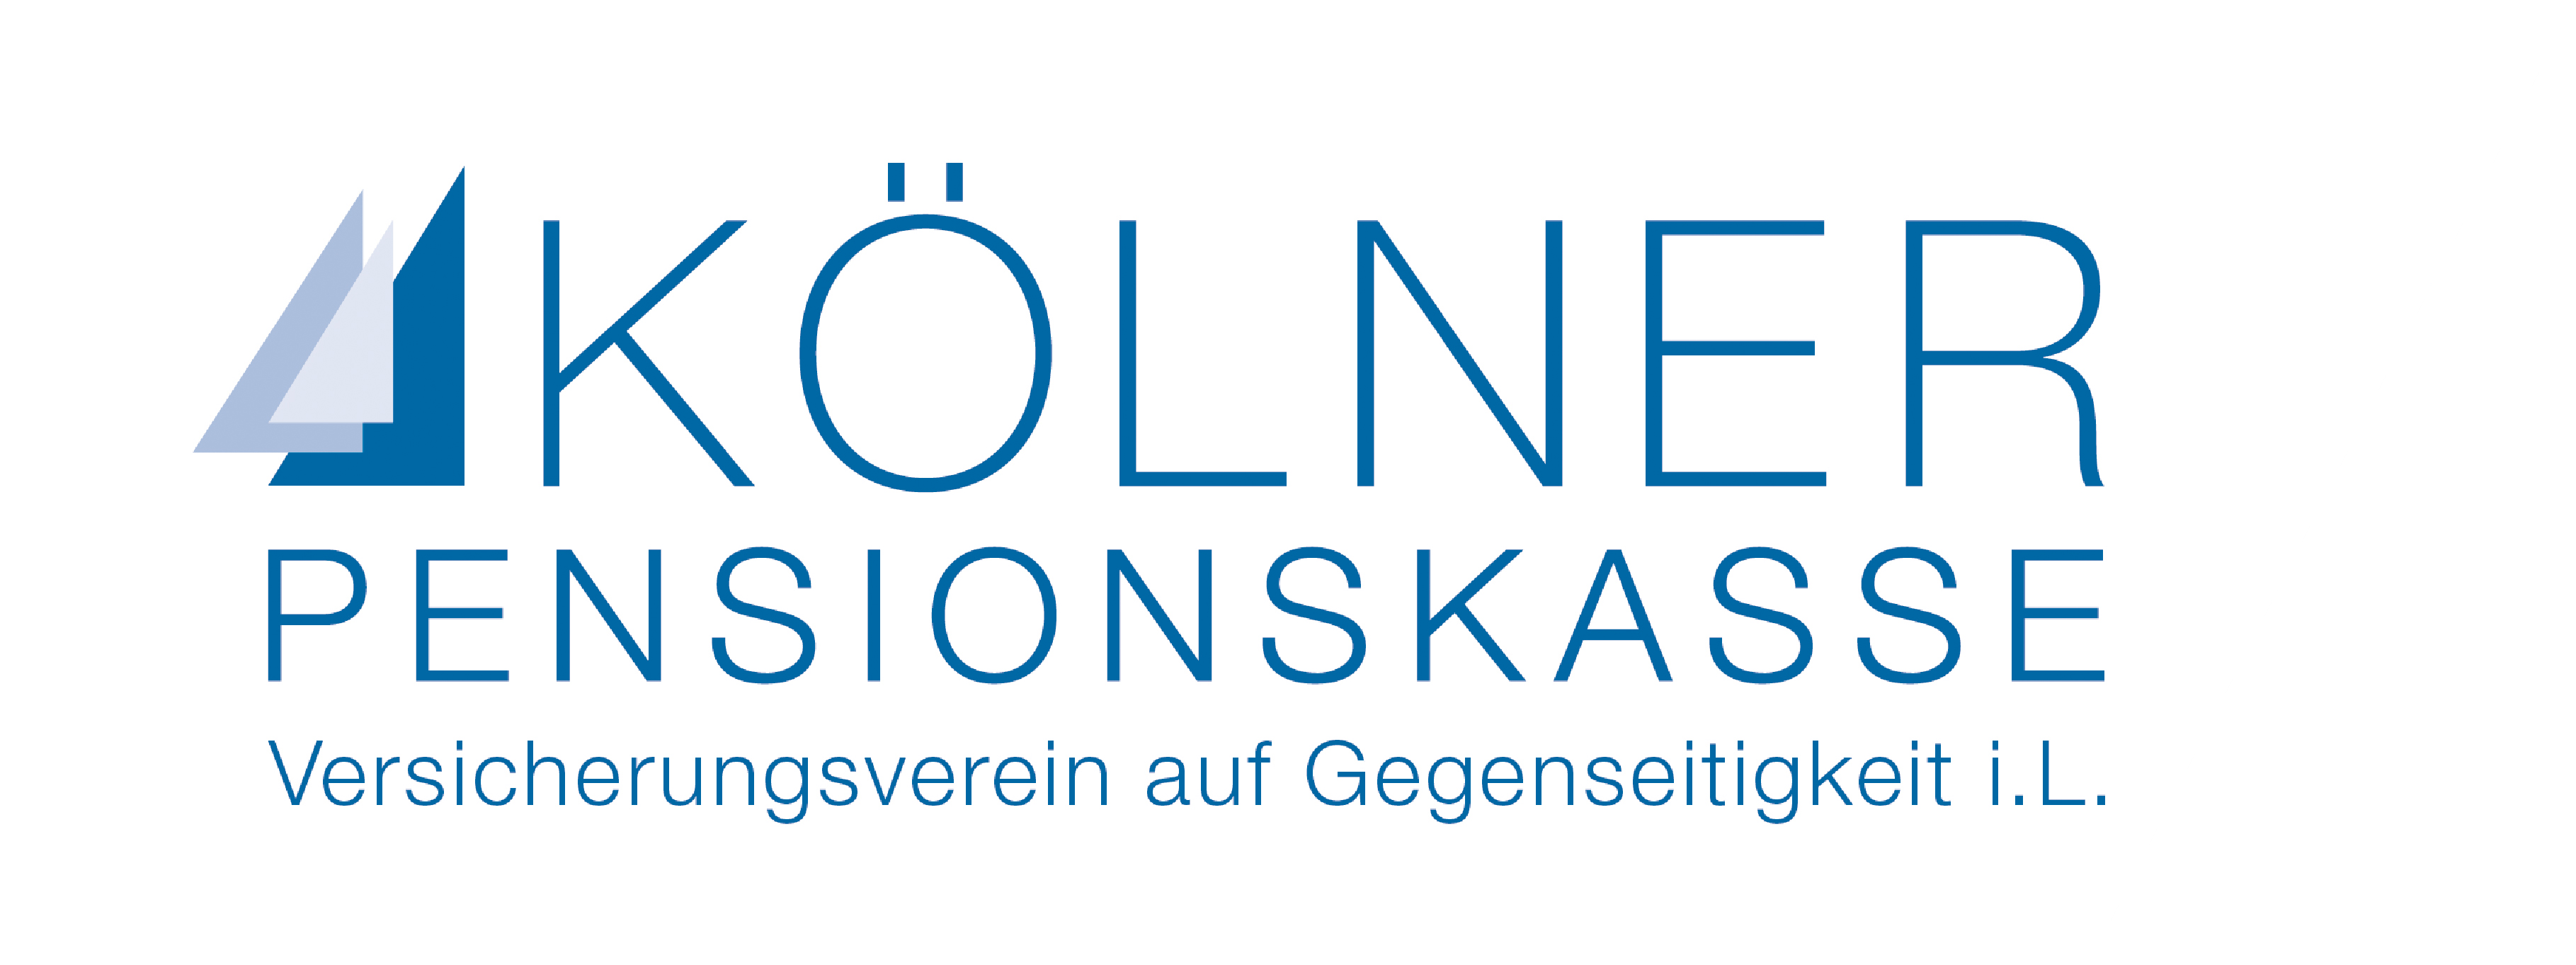 Kölner Pensionskasse logo